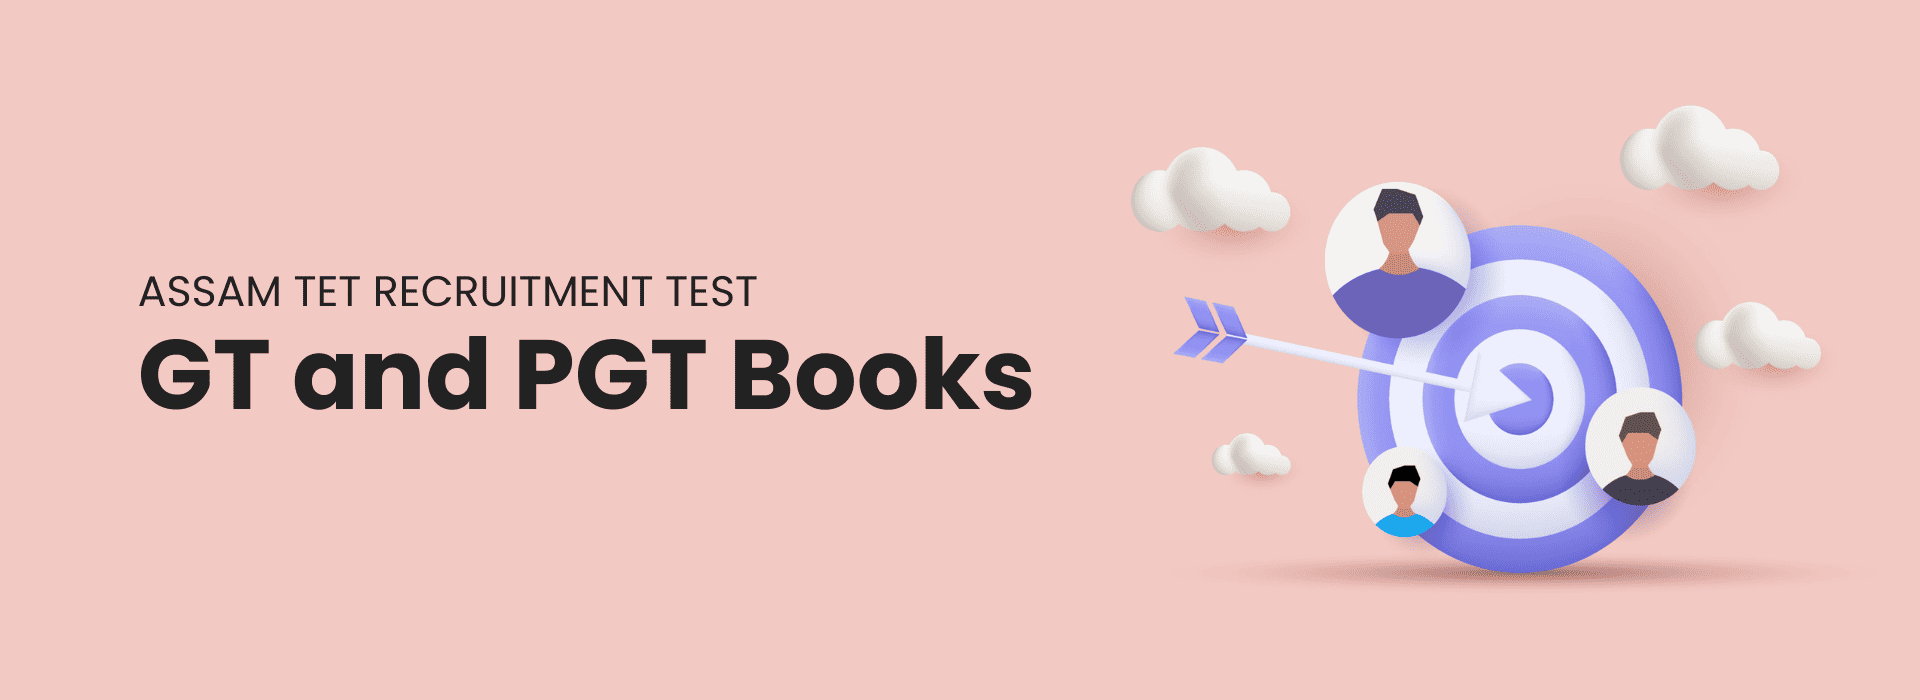 Best Guide Books for Assam TET Recruitment Test